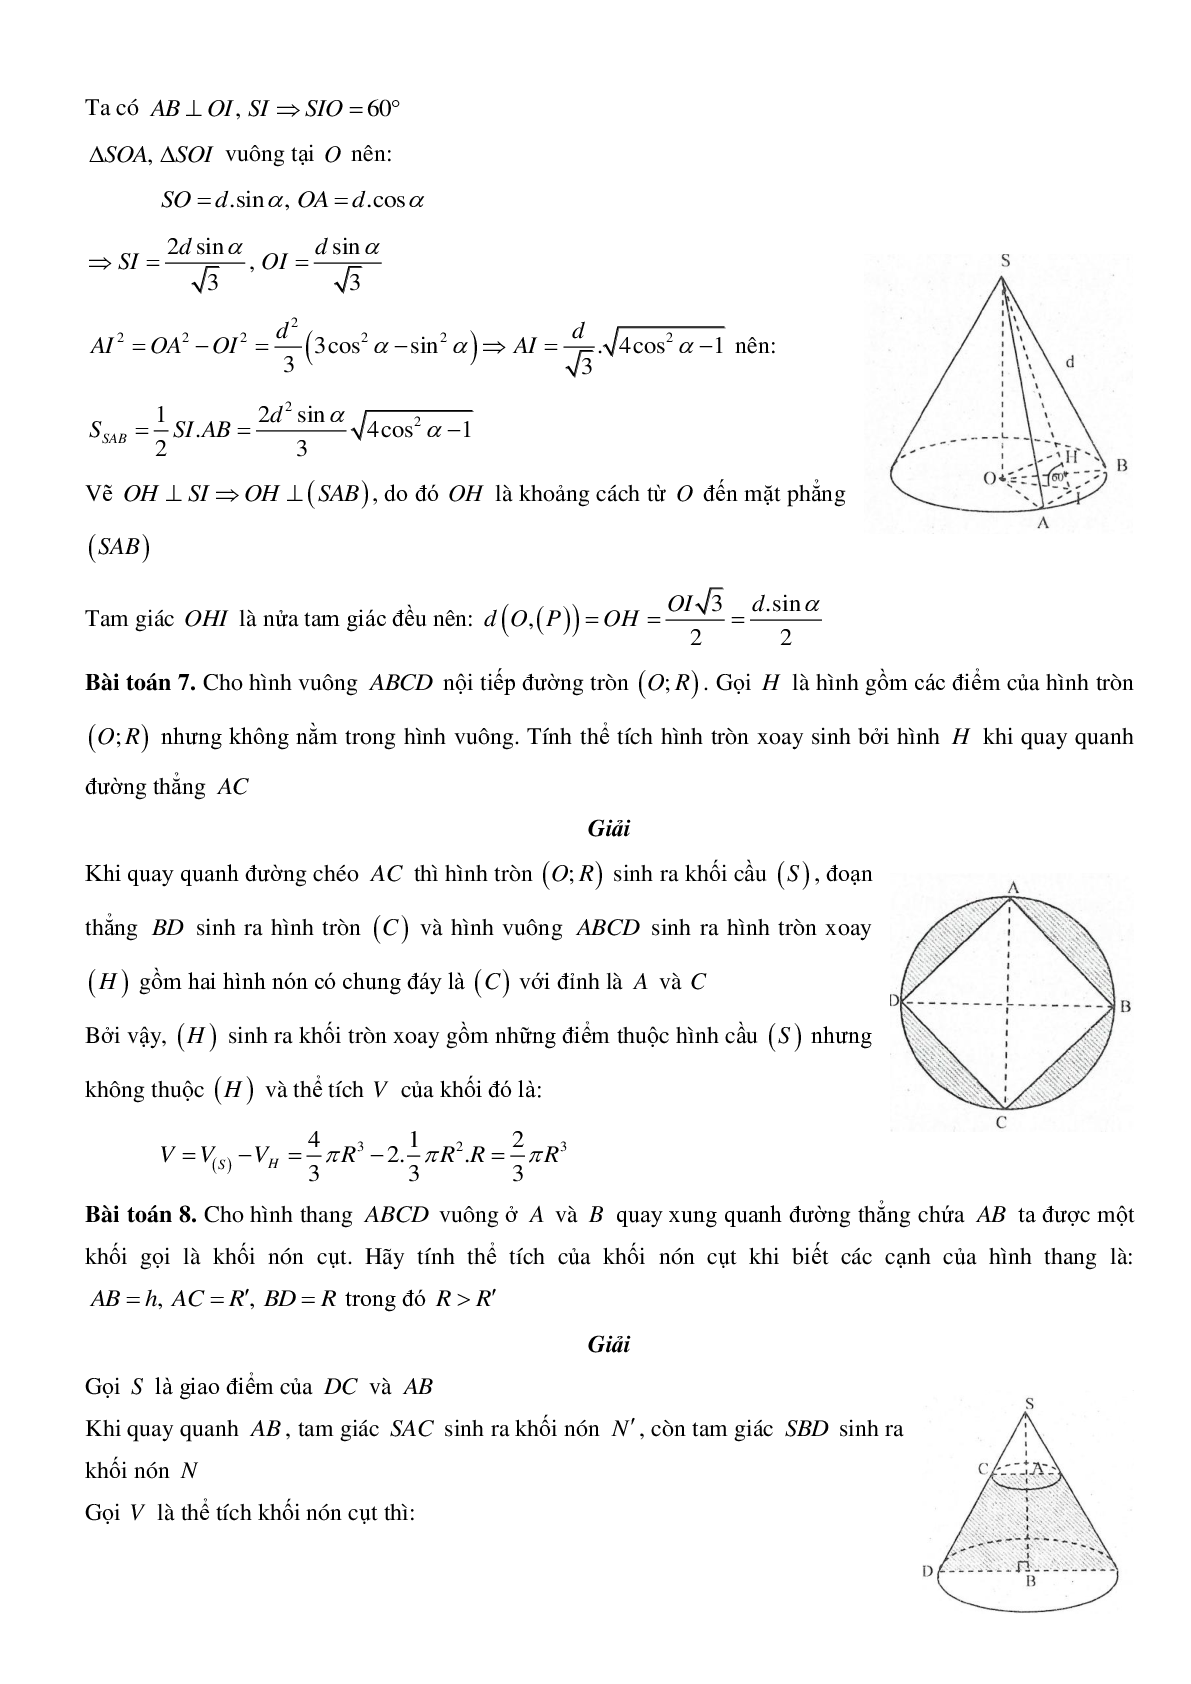 Mặt nón - Hình nón - Khối nón - Ôn thi THPT QG môn toán (trang 4)